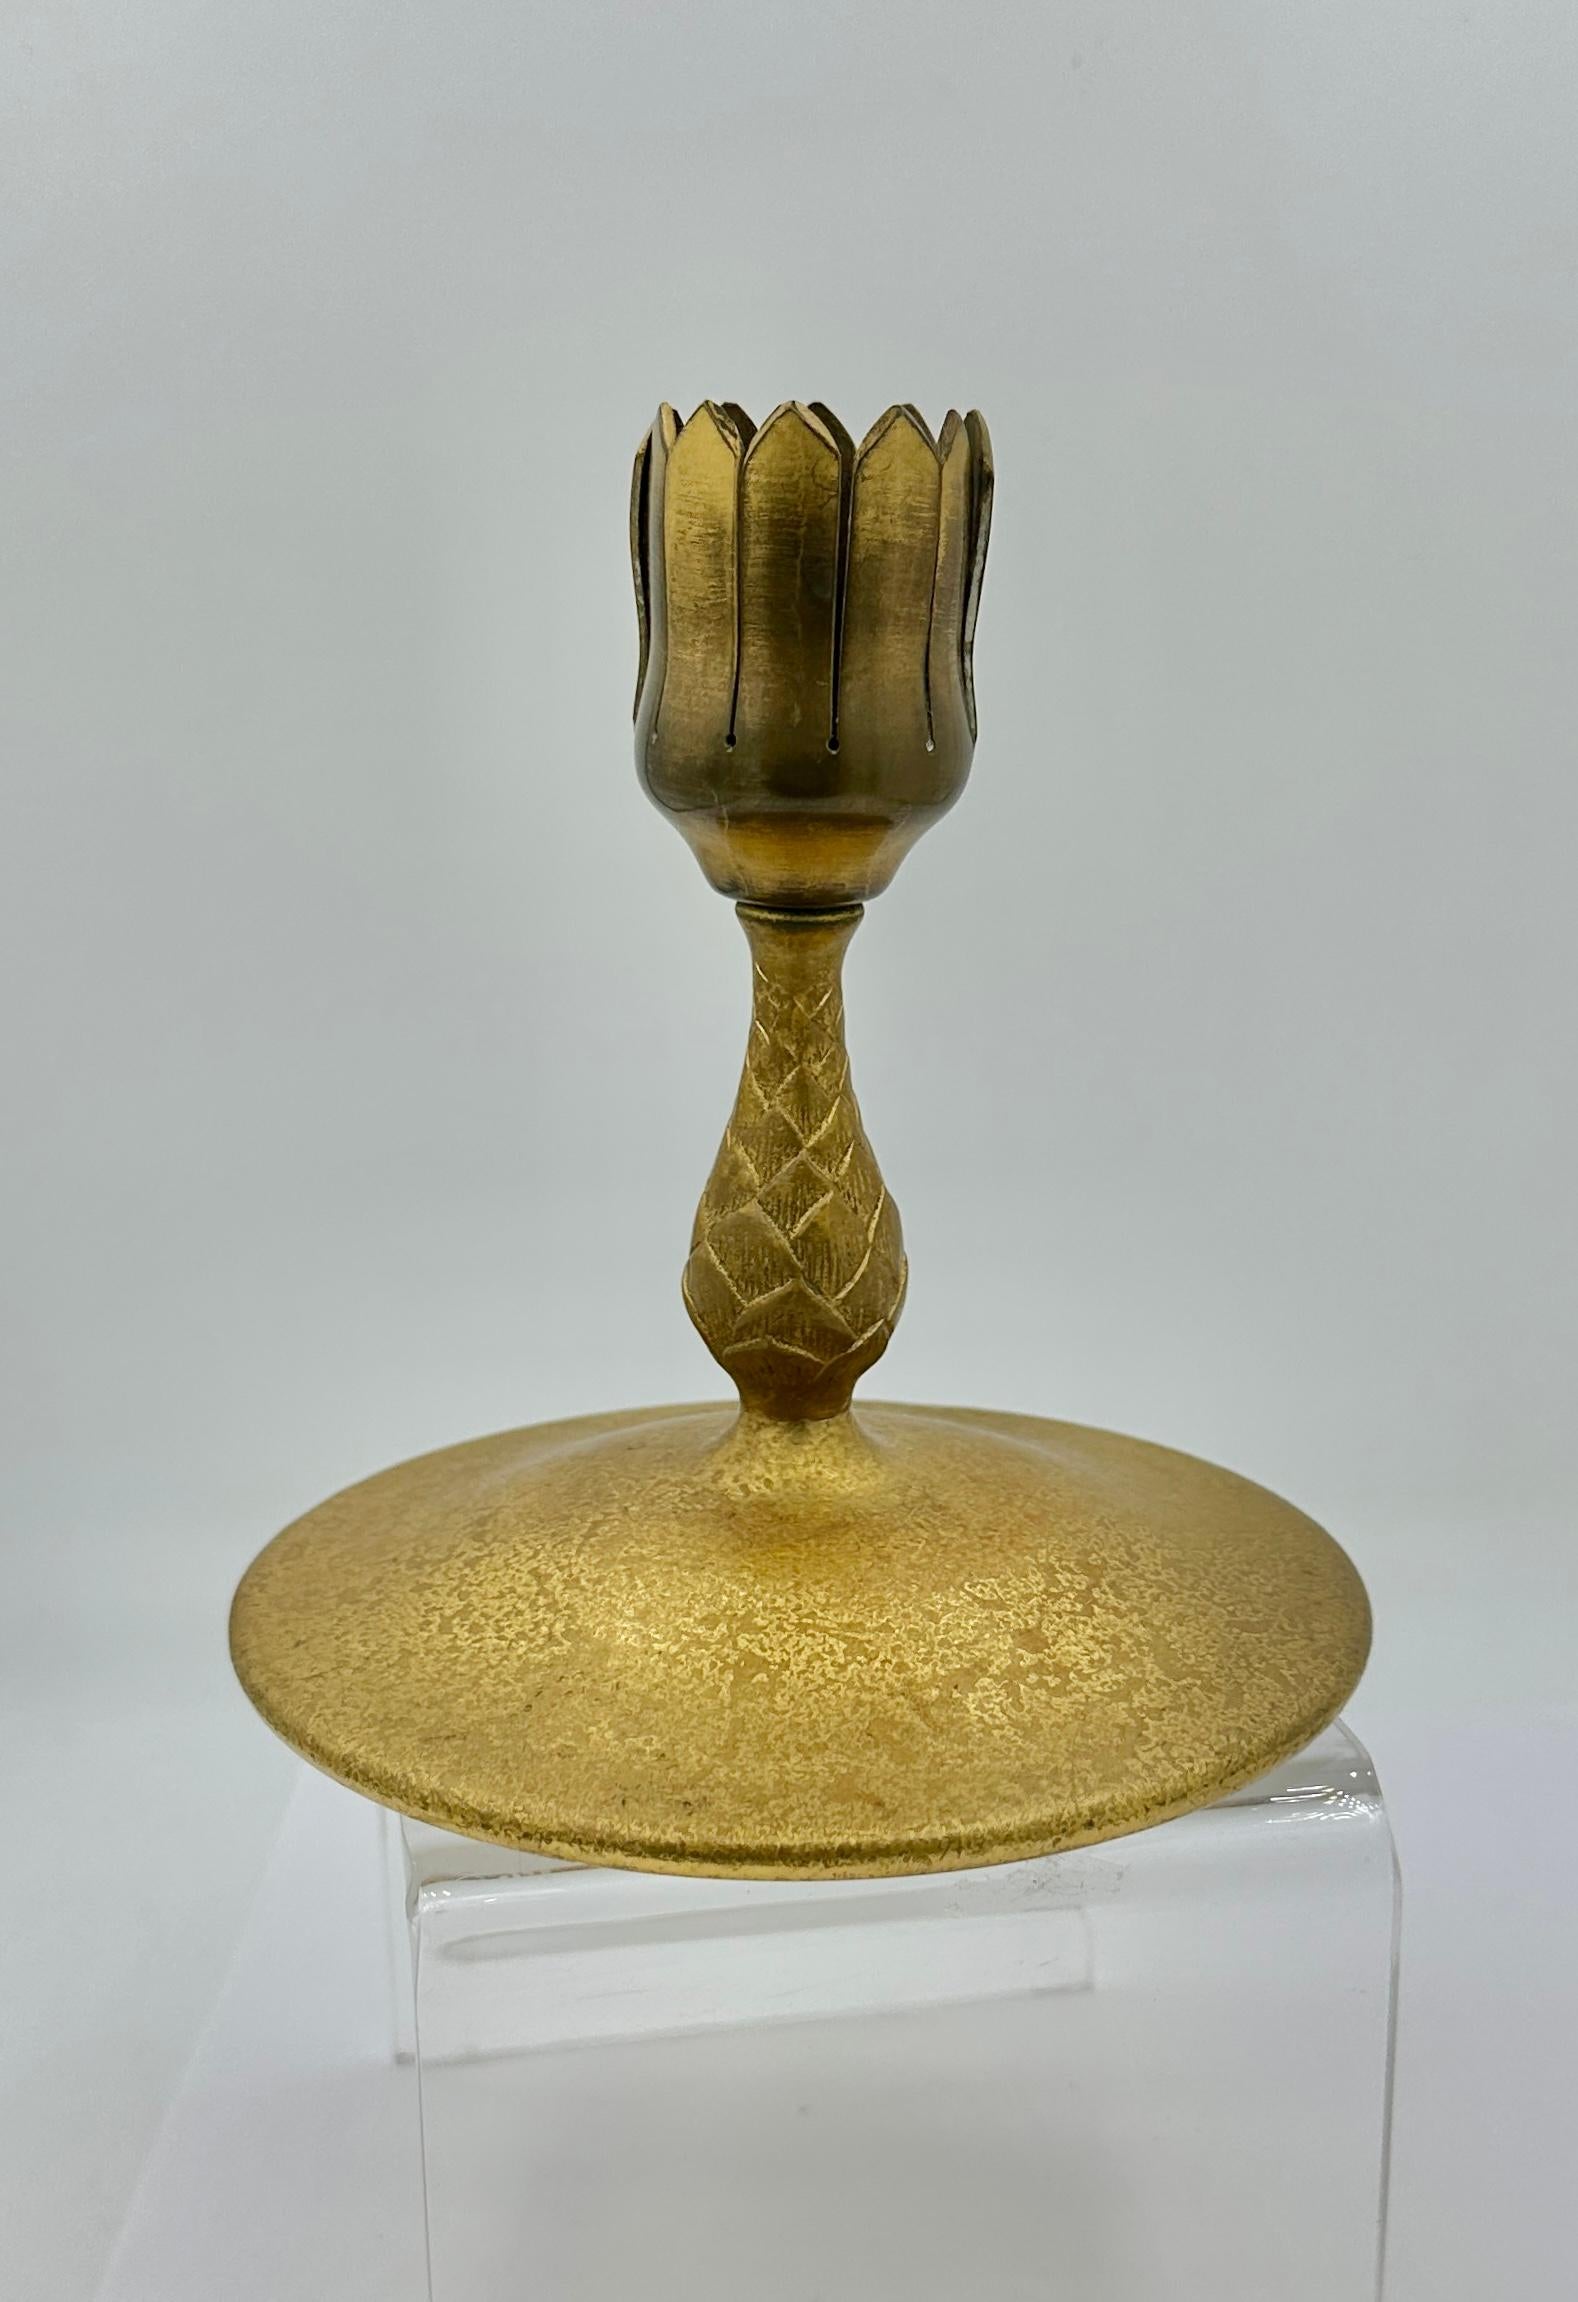 Dies ist ein säuregeätzter Tiffany Studio Bronzesockel für eine Vase, der auch als Kerzenständer verwendet werden kann.  Es handelt sich um einen eigenständigen Kerzenständer ohne Glasvase oder Einsatz. Die Zange, die eine Vase hält, ist in